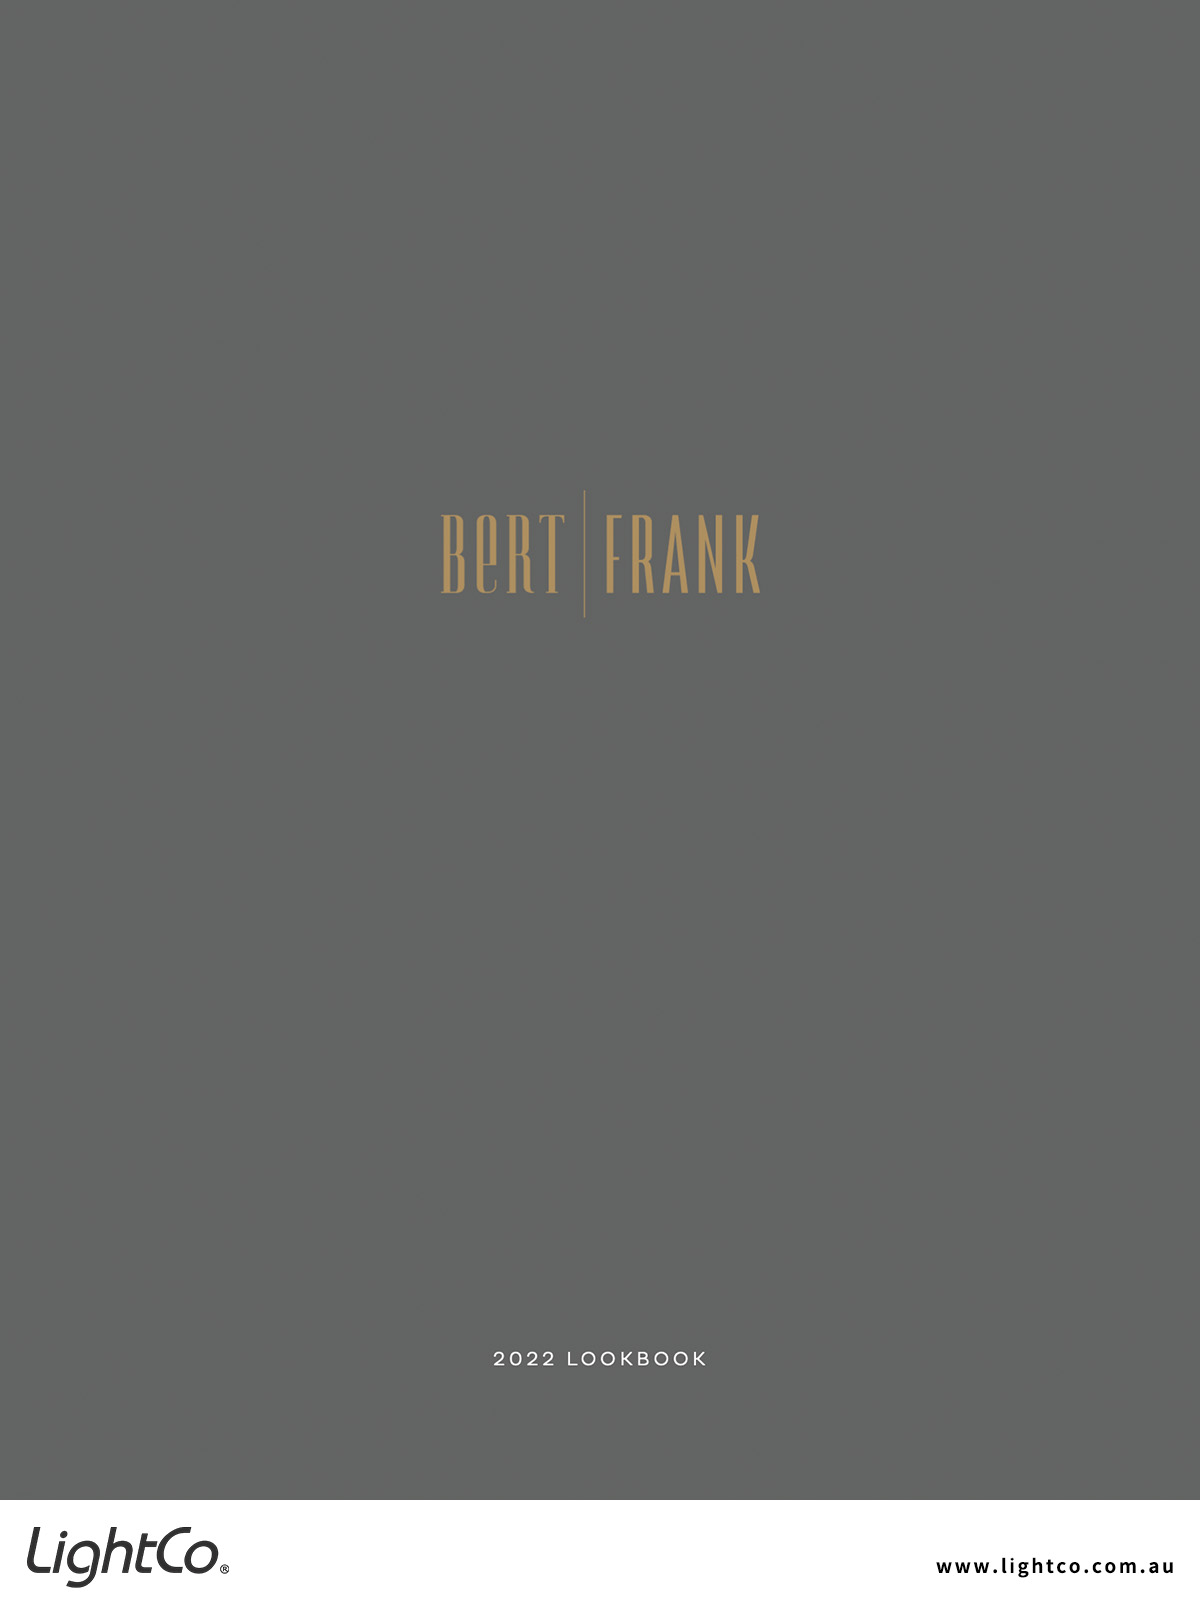 catalogue-bert-frank-lookbook-2022